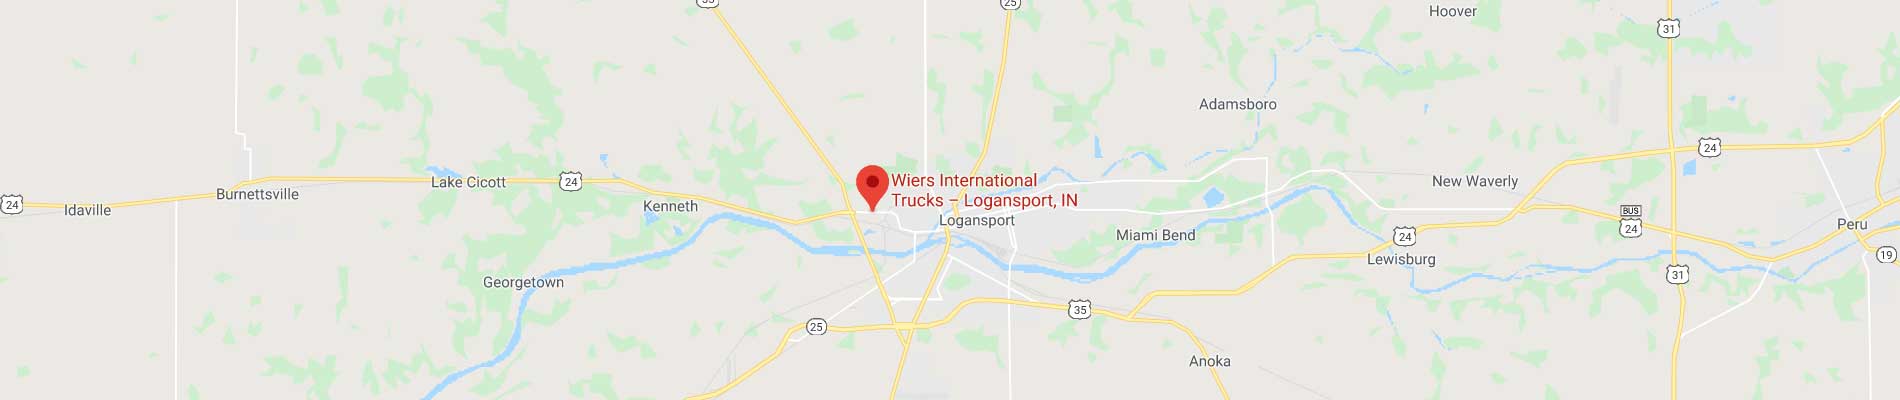 map location of wiers international trucks dealer logansport in